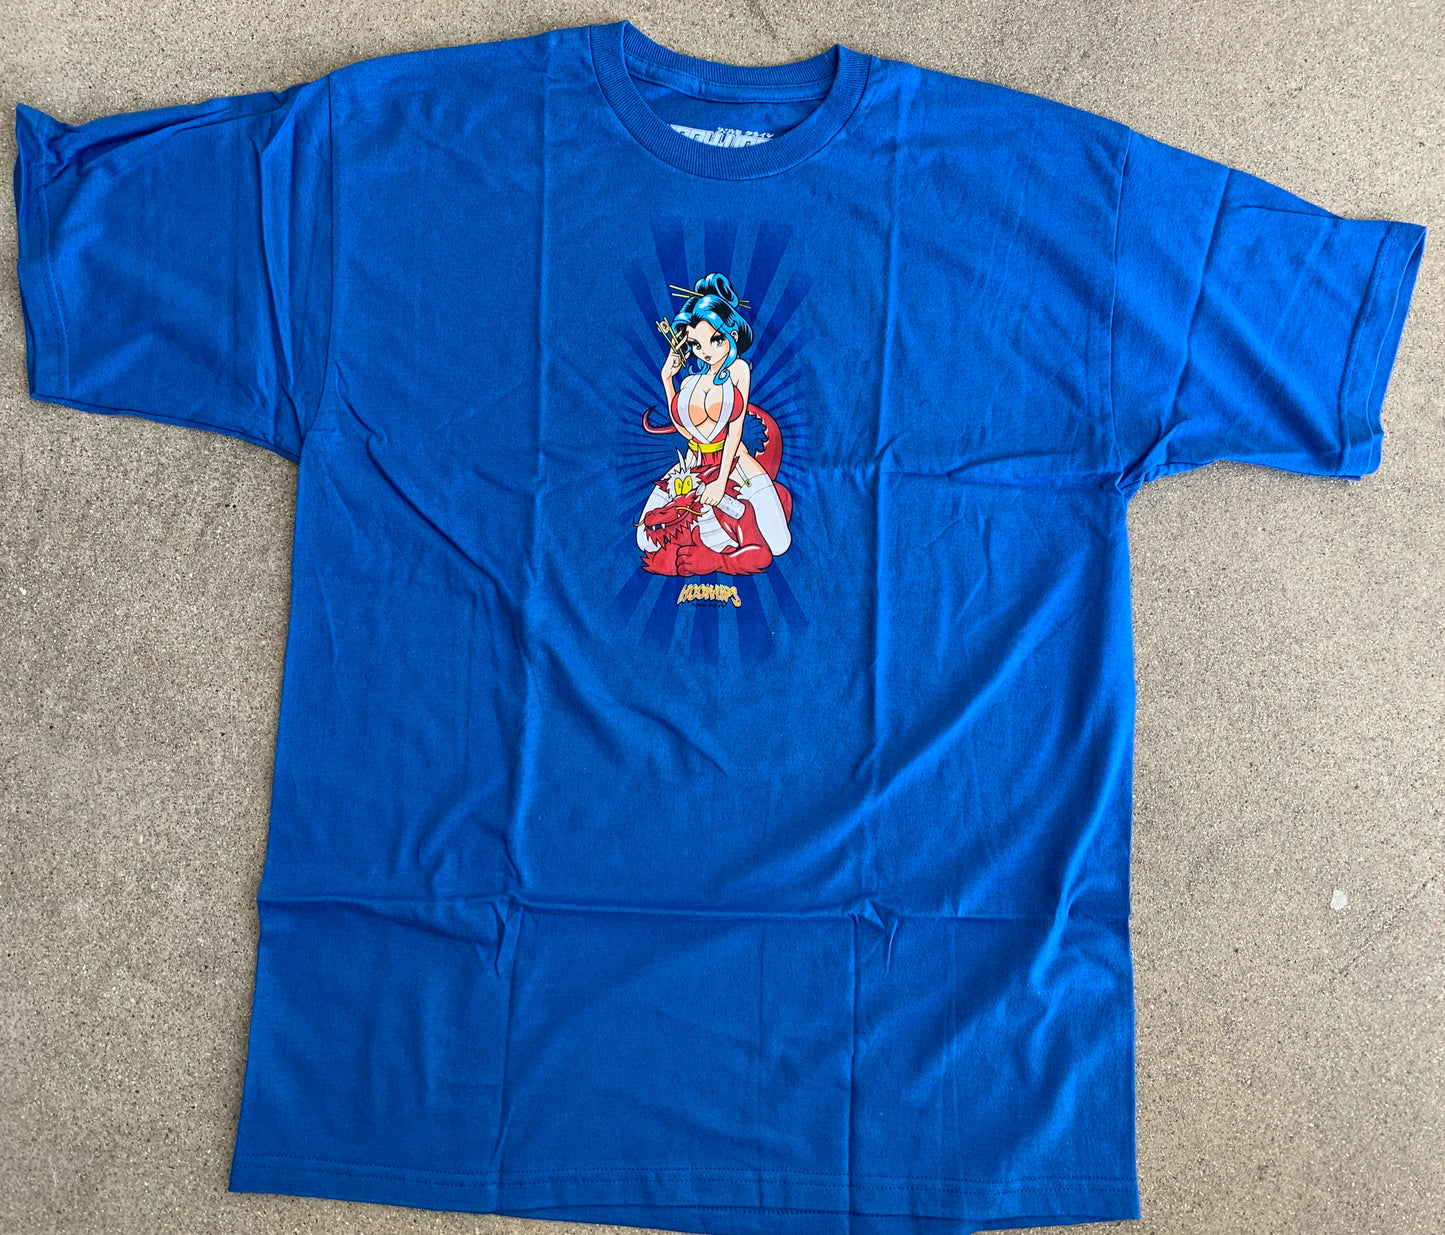 Geisha 3 T-shirt - ROYAL BLUE